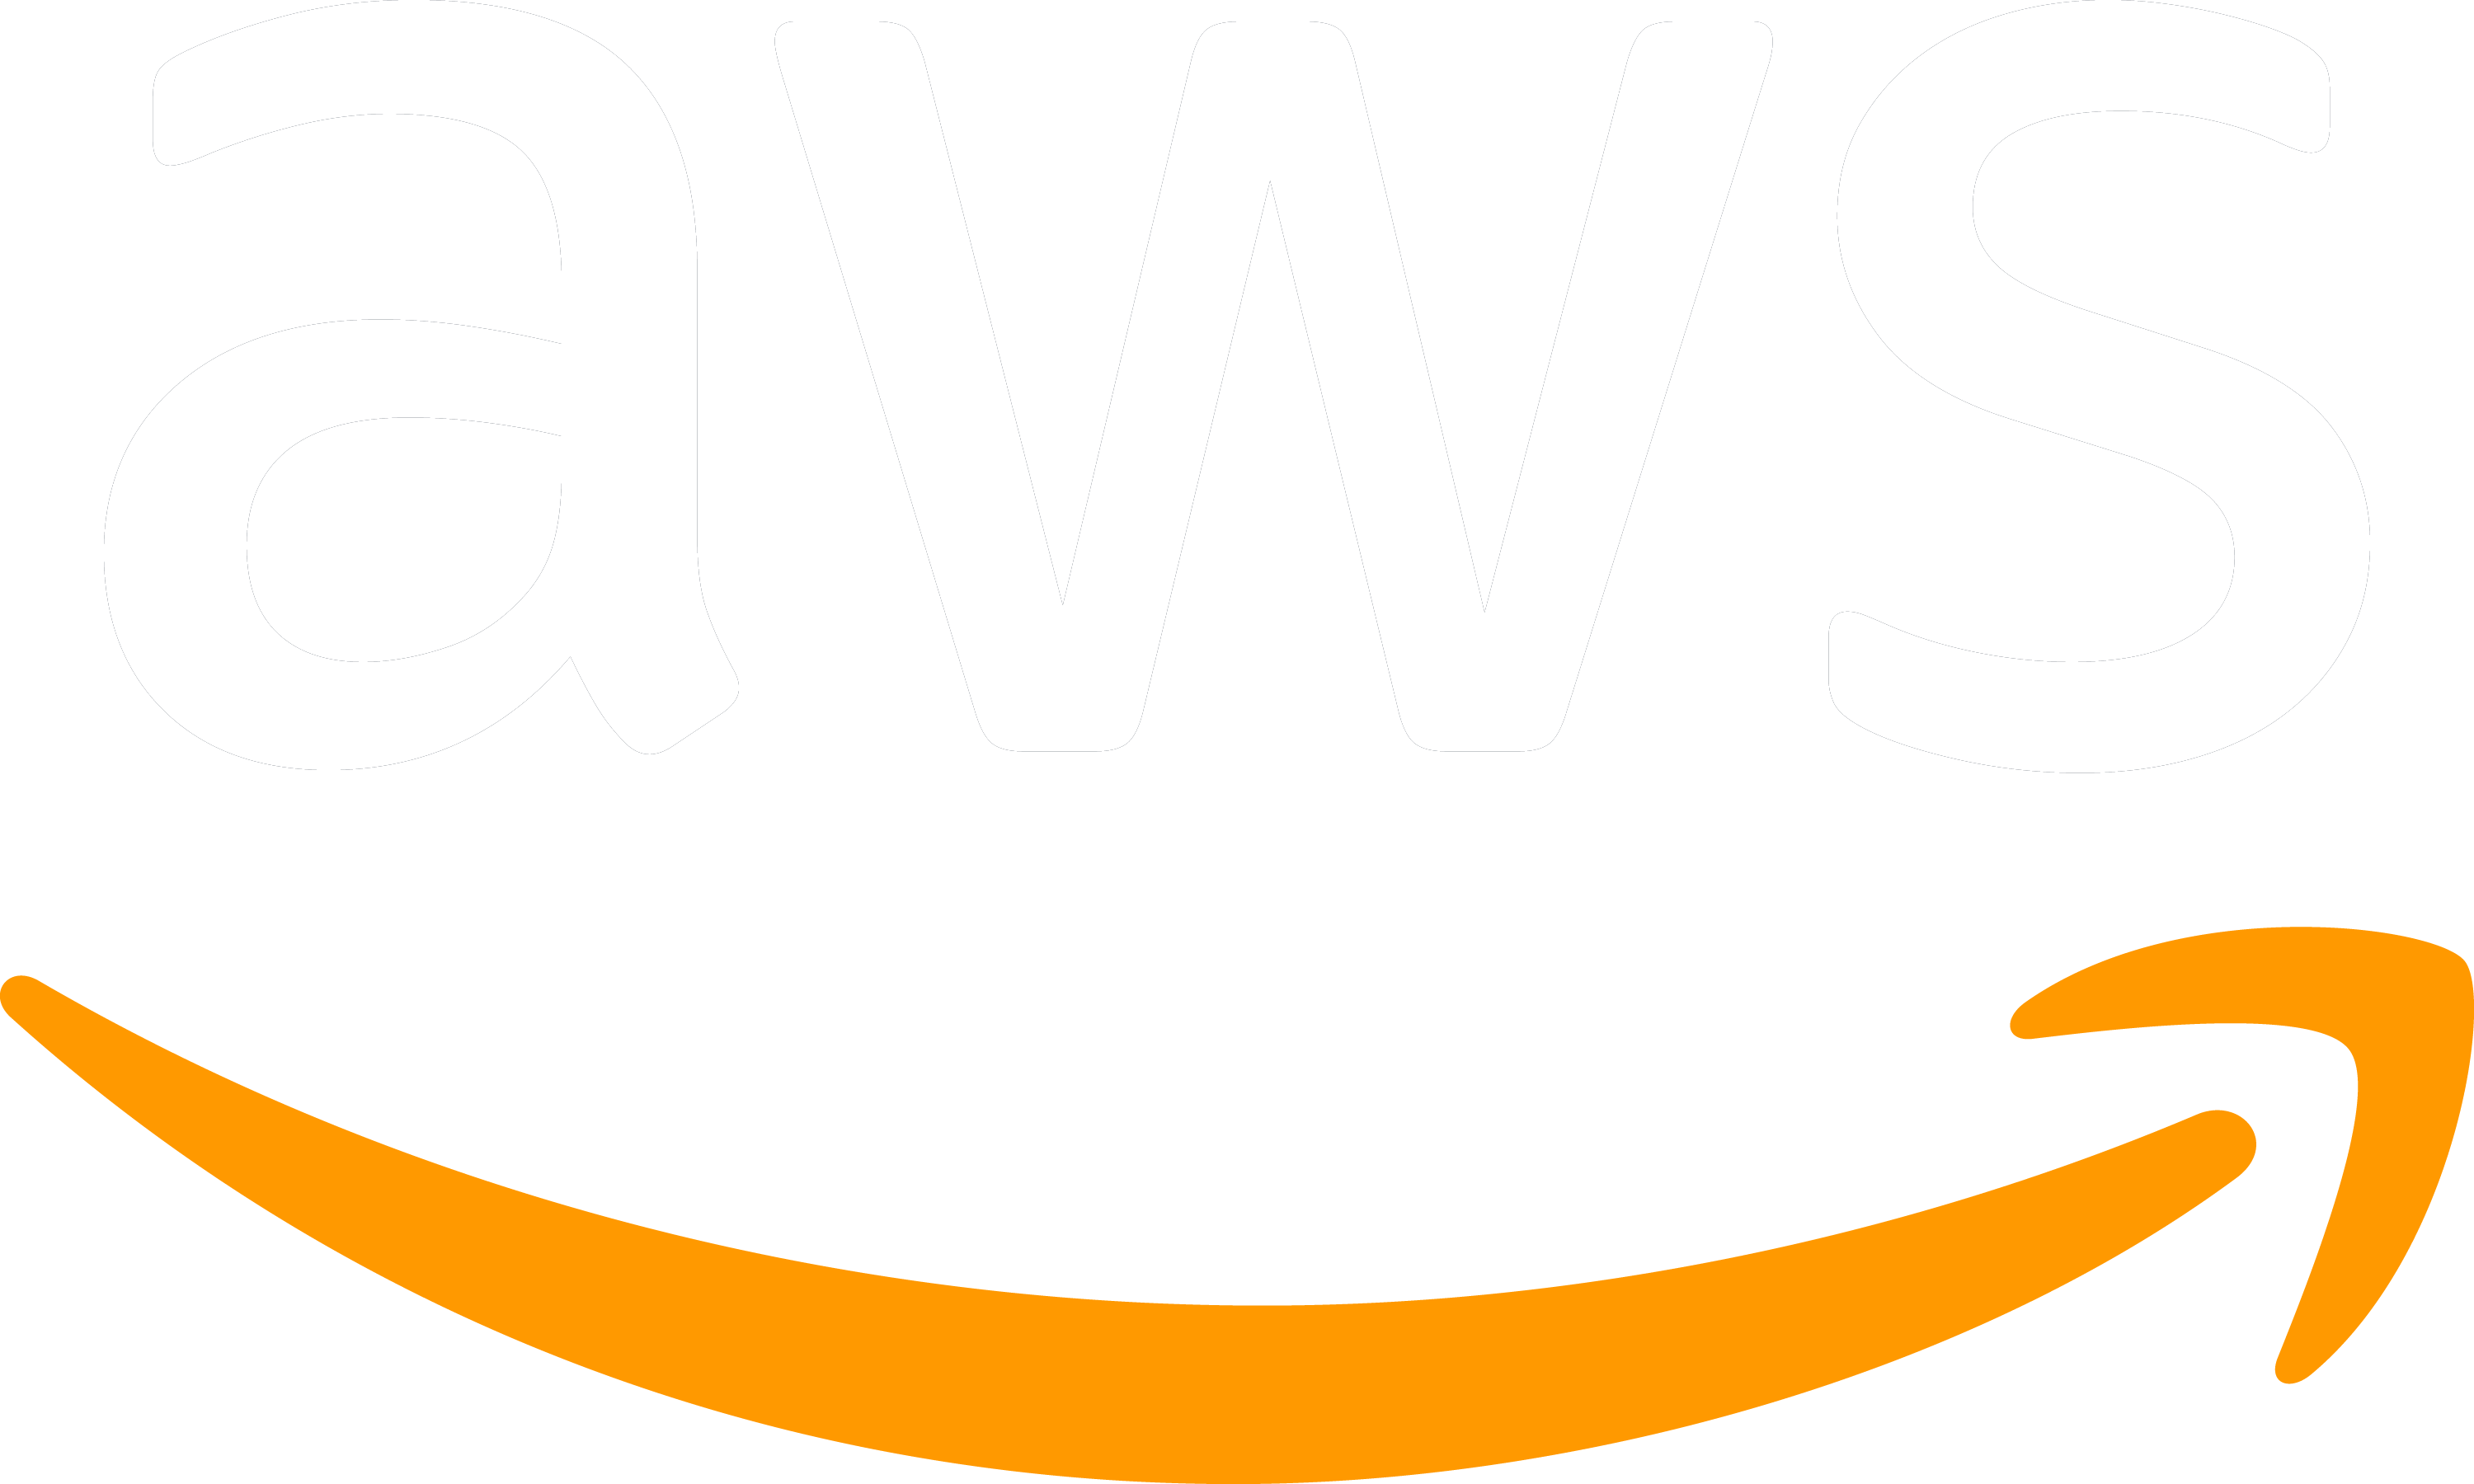 AWS White Logo